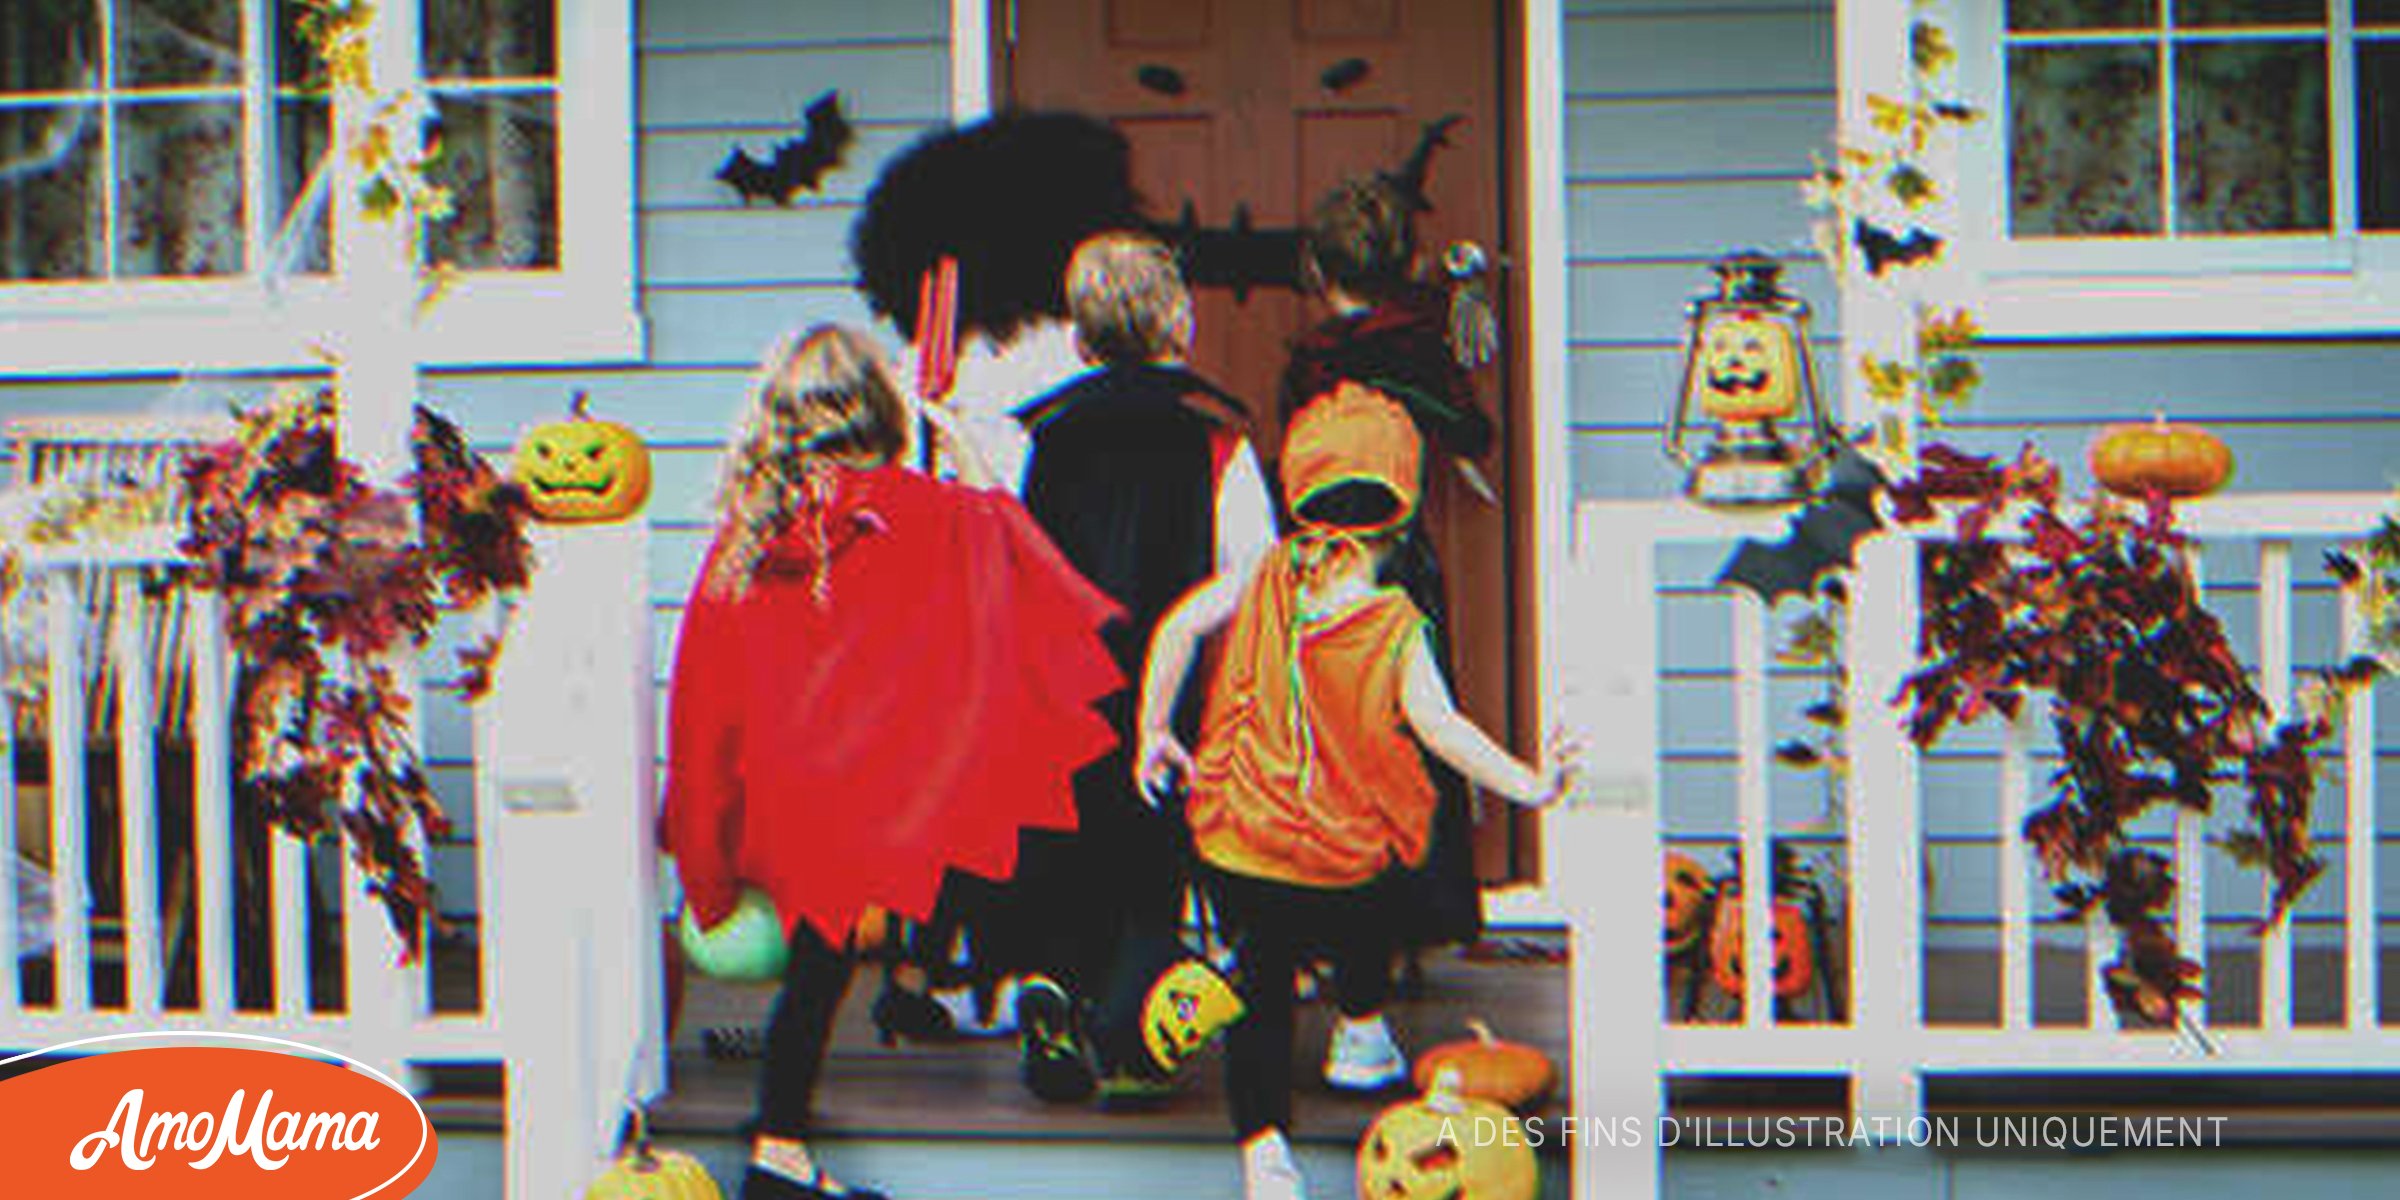 Trois ans après le décès de son fils, une femme ouvre sa porte pour Halloween et voit des enfants dans des costumes qu’elle avait cousus pour lui